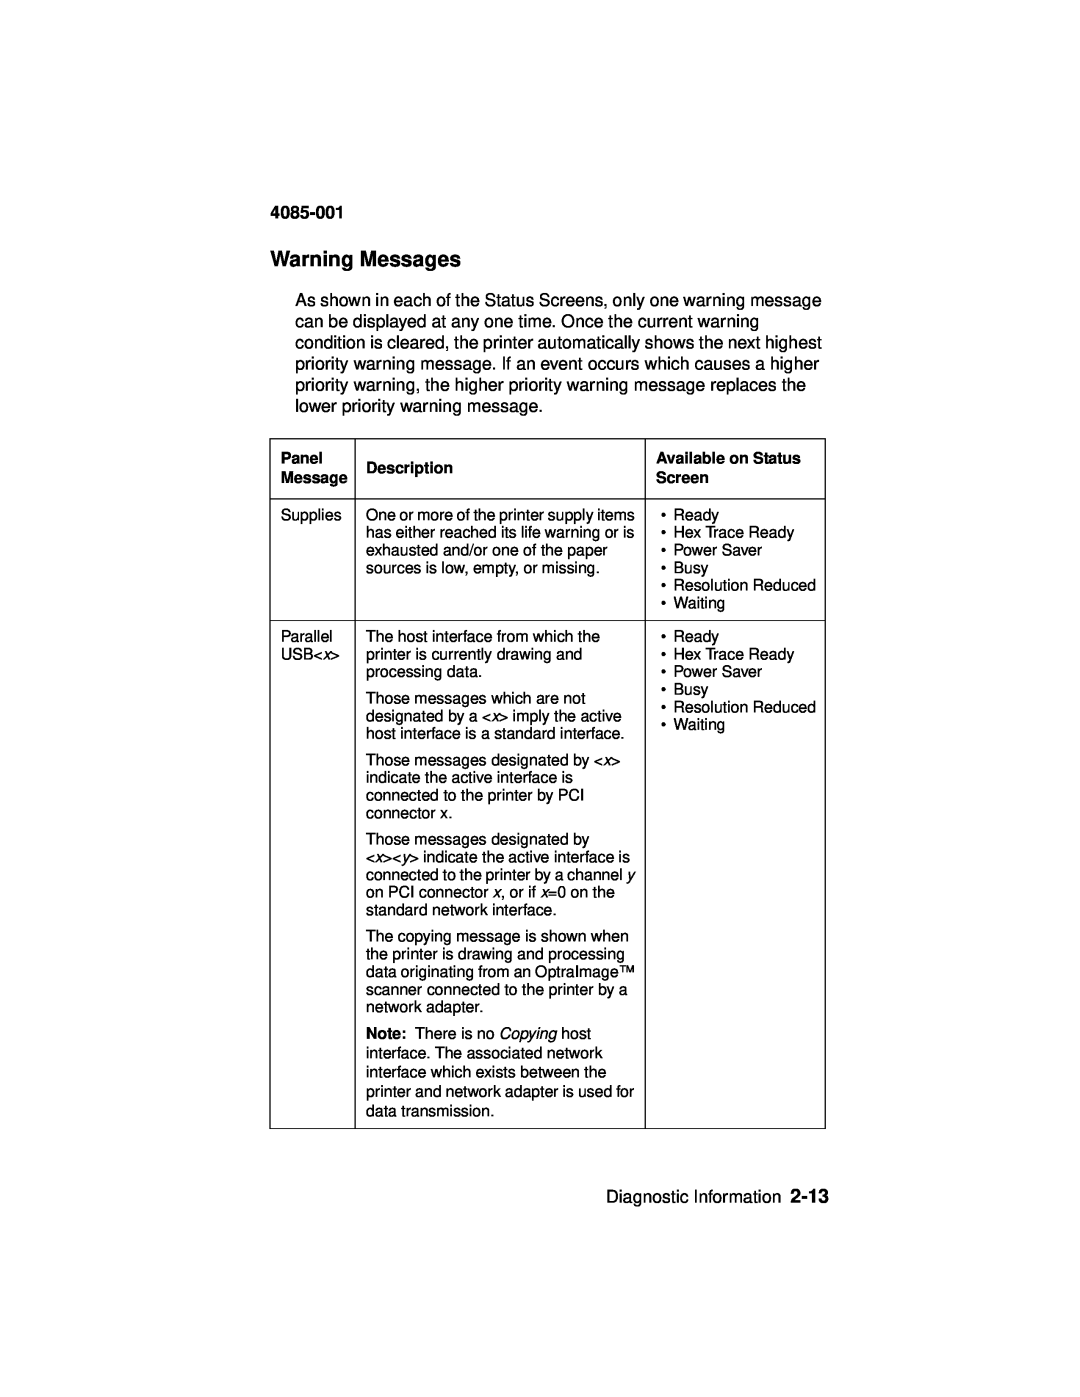 Lexmark Printer, J110 manual Warning Messages, 4085-001, Diagnostic Information 